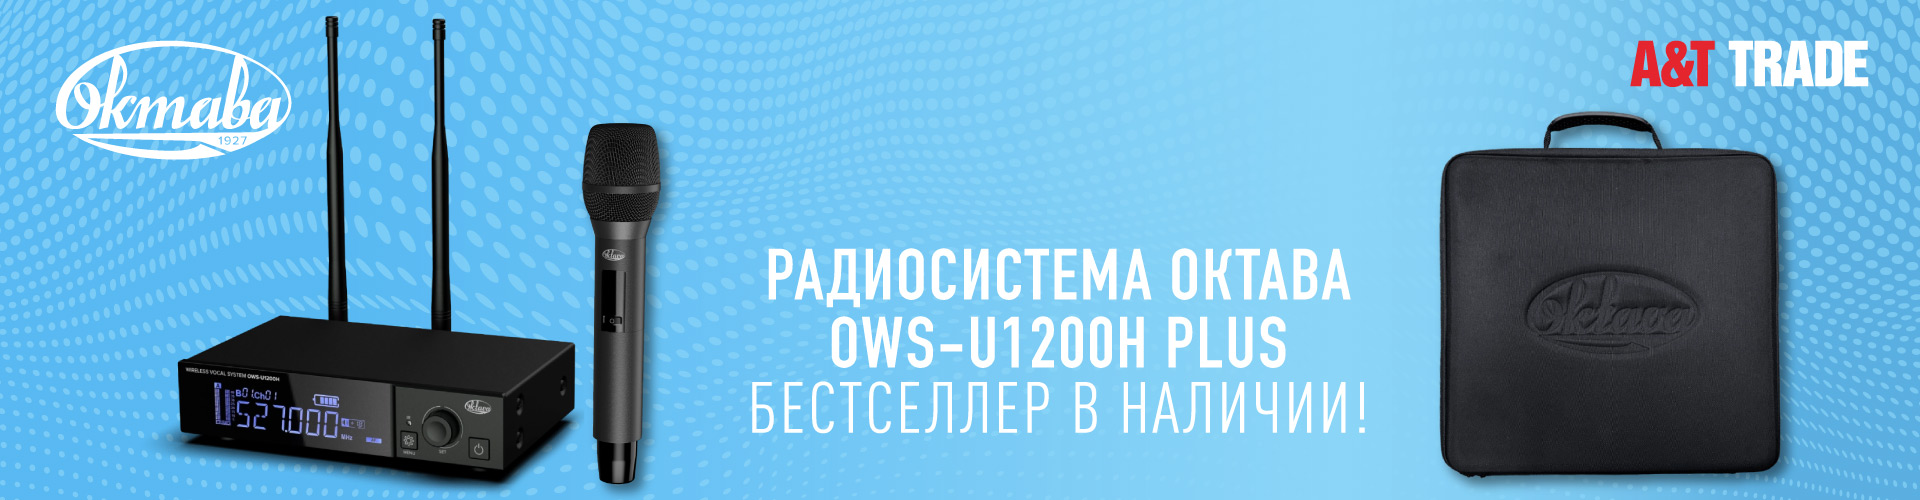 Радиосистема Октава OWS-U1200H plus на стоке